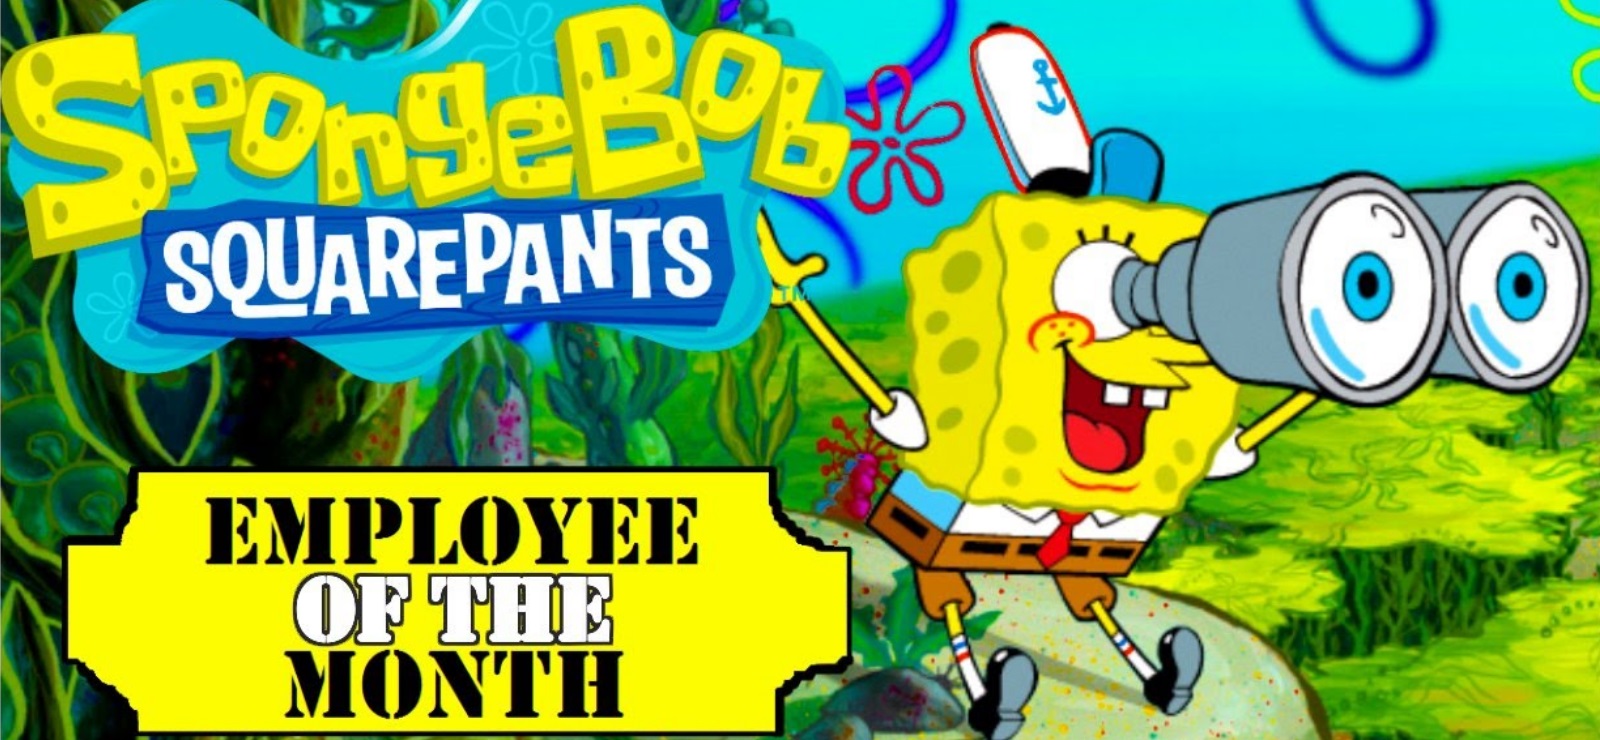 spongebob squarepants employee of the month download zip